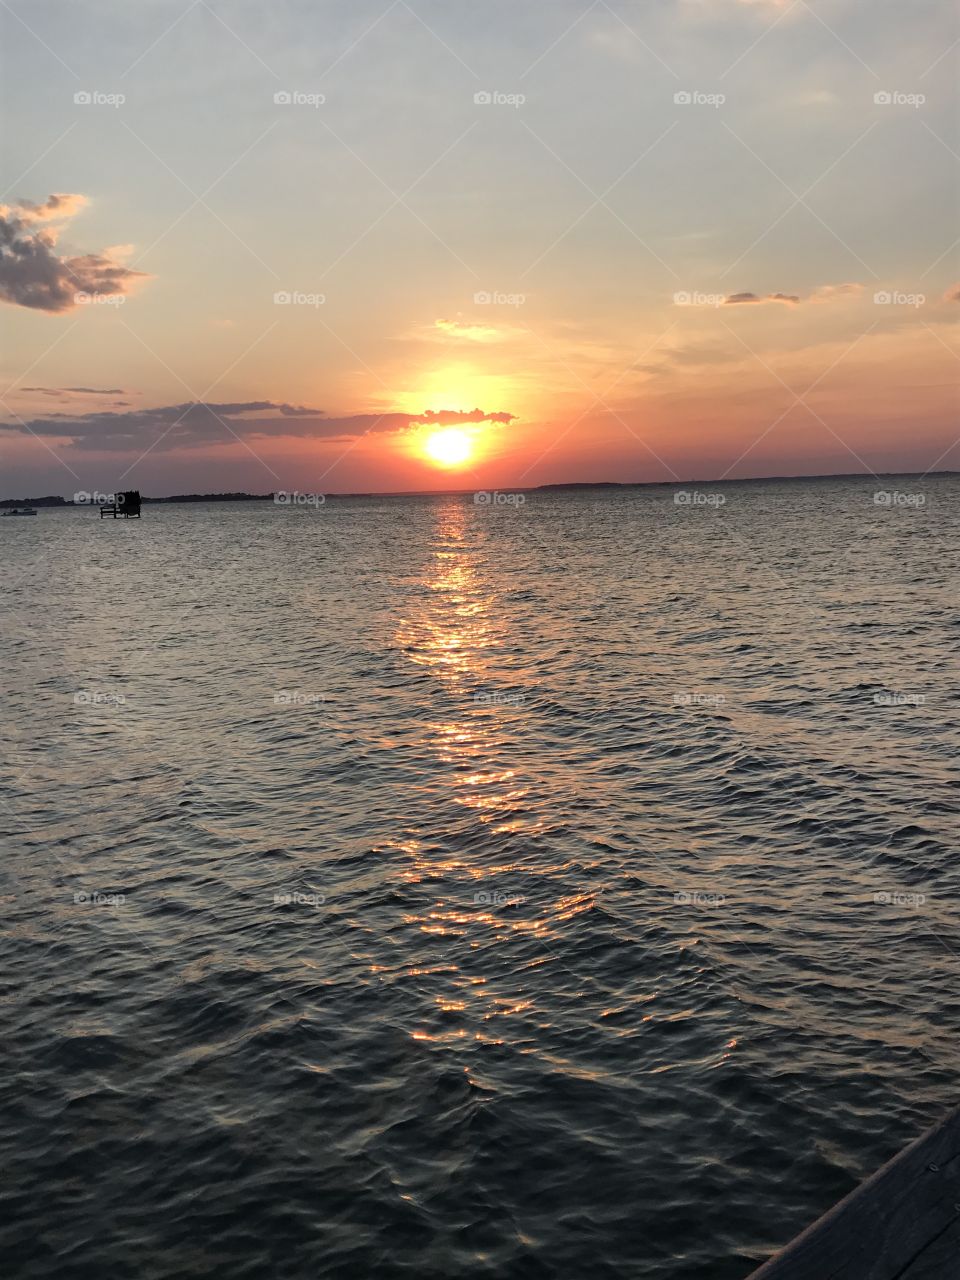 Chesapeake bay sunrise